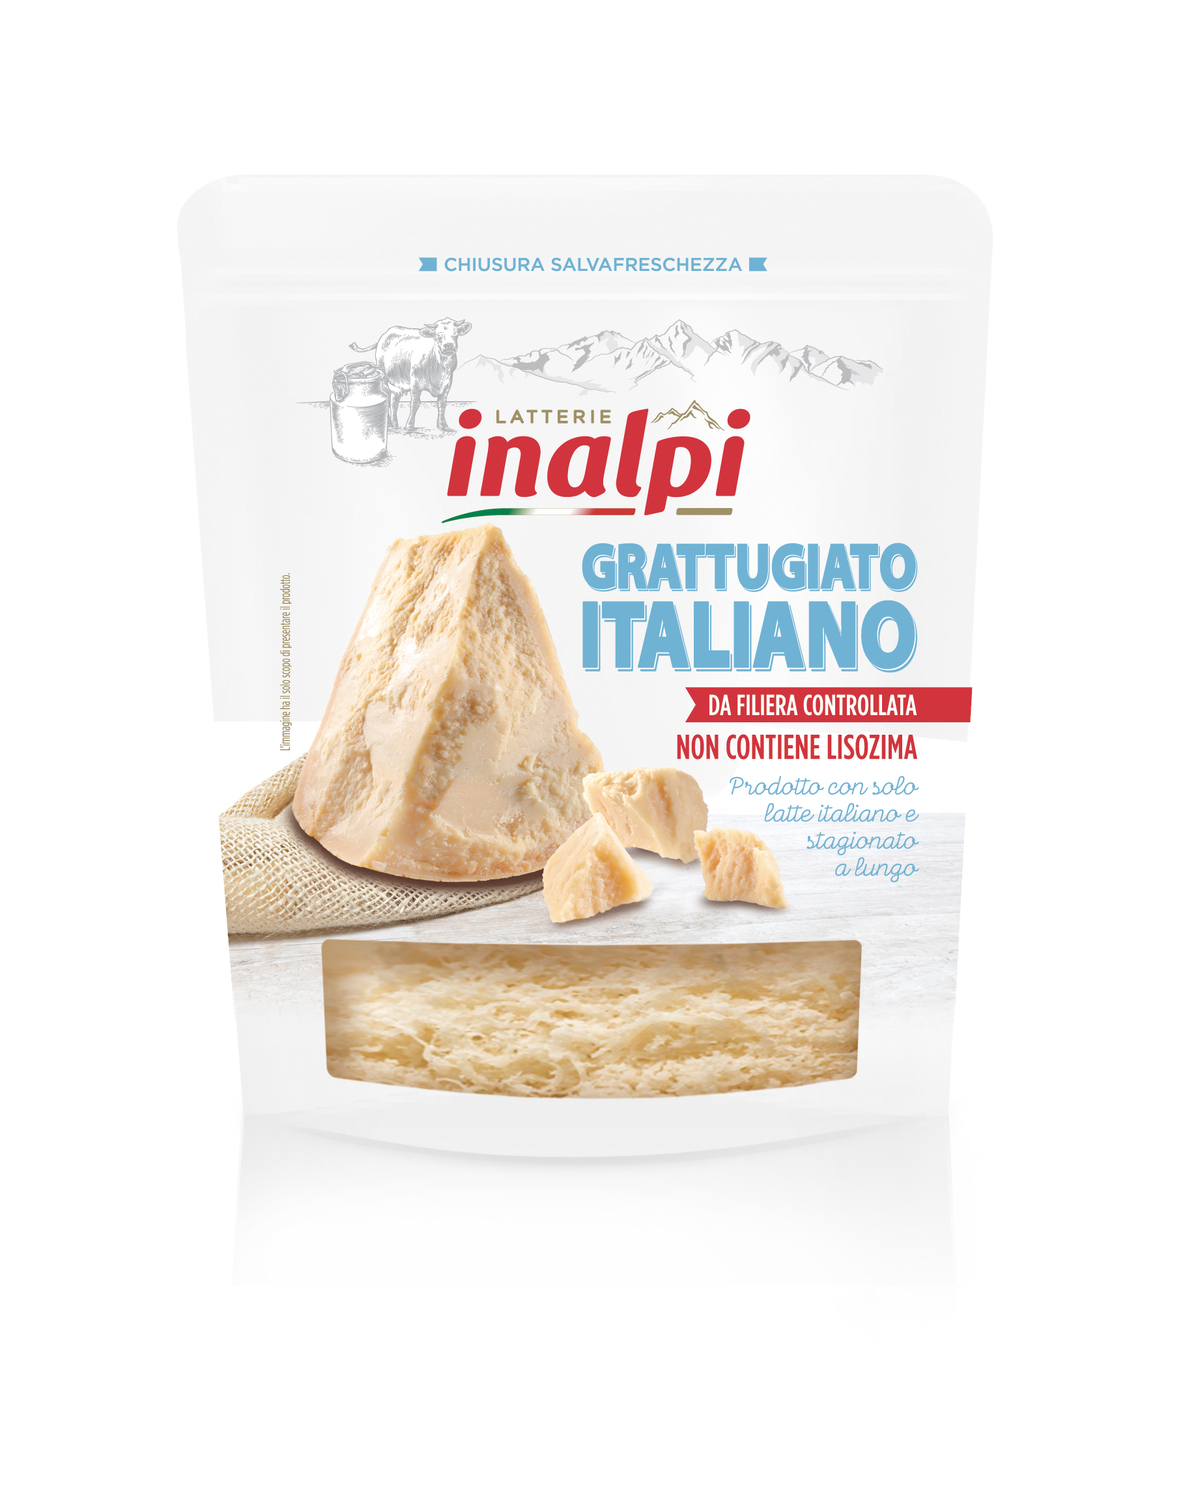 Grattugiato Italiano Inalpi, il prodotto che migliora la performance dello scaffale, 100% formaggio italiano, senza lisozima